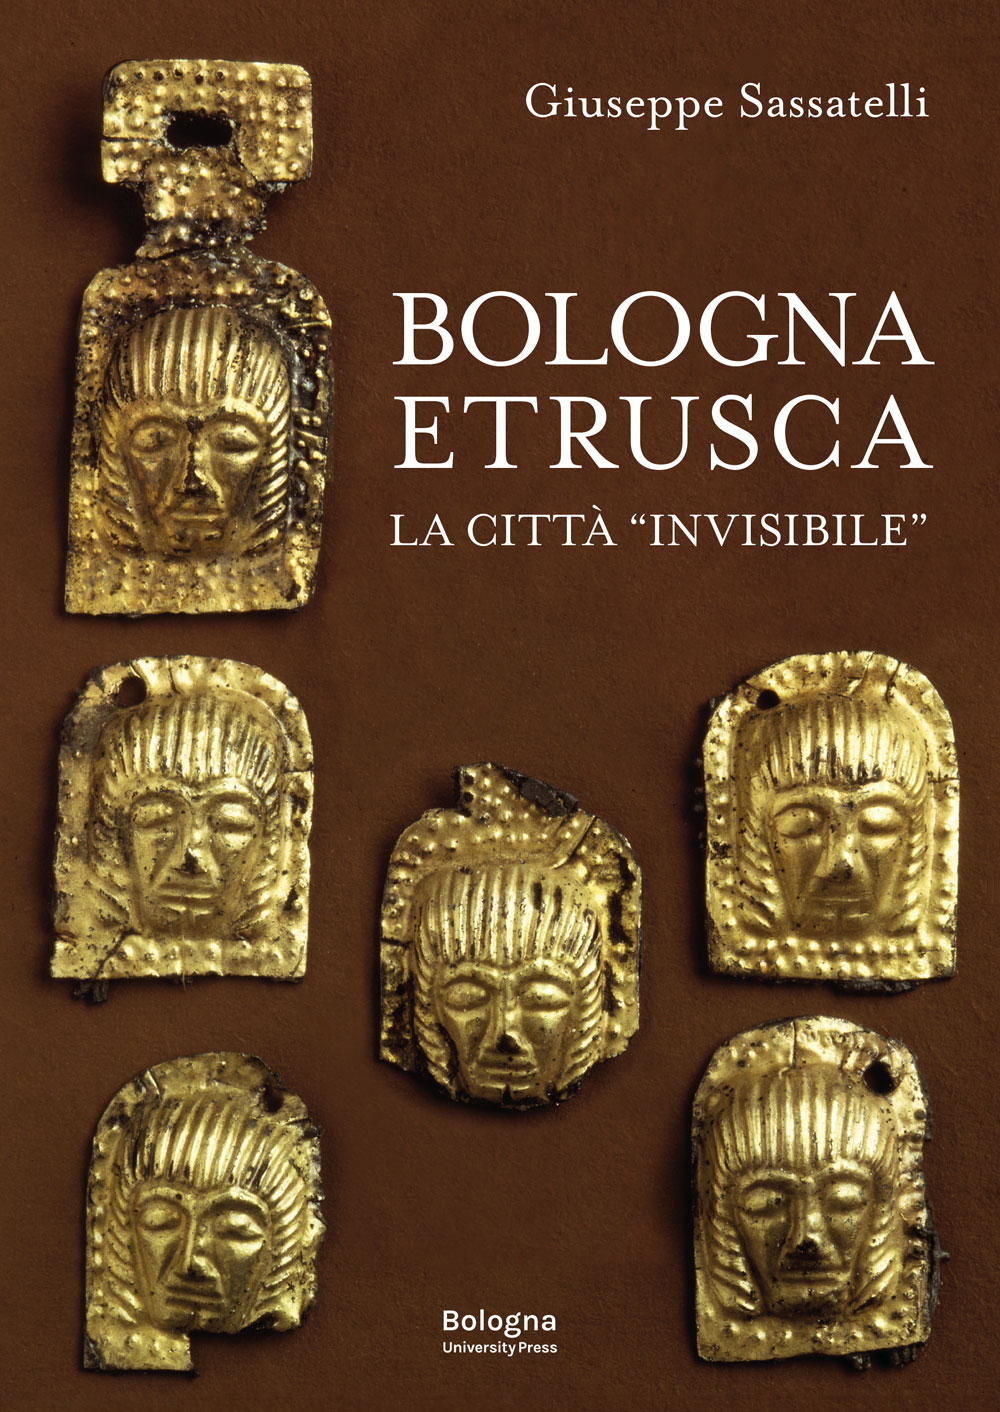 Bologna etrusca - Bologna University Press